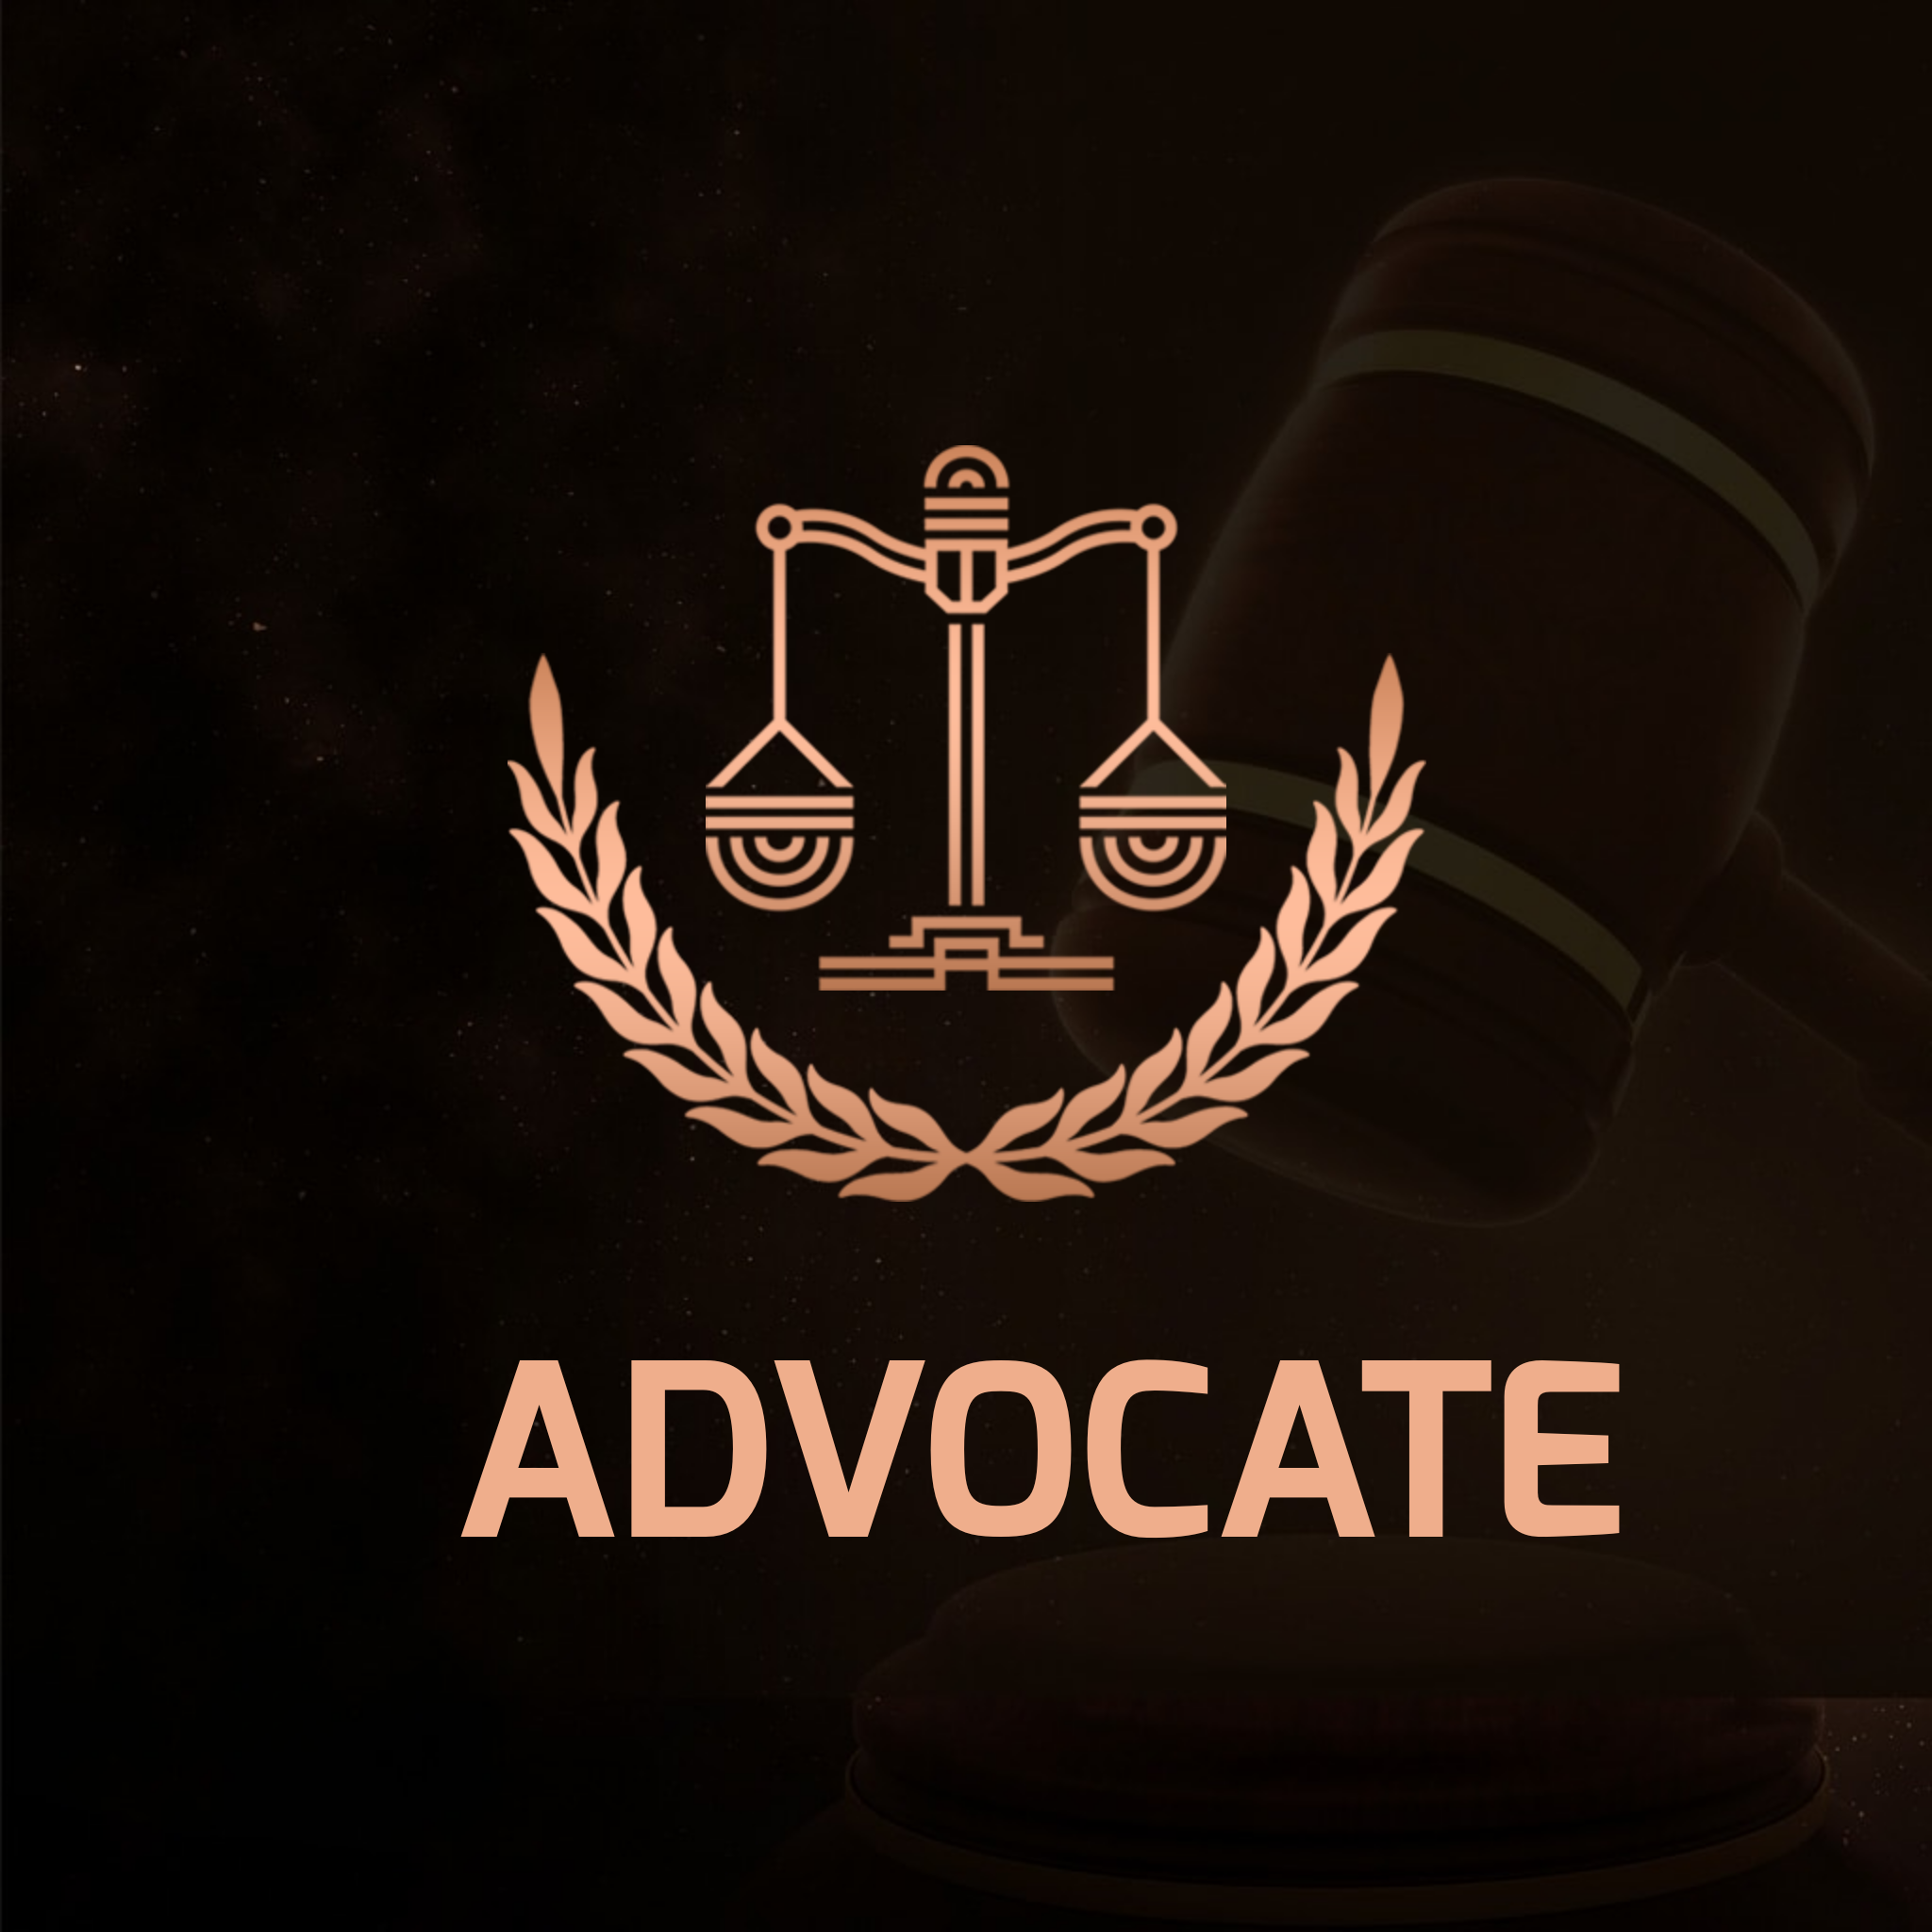 Advocate logo. Lawyer logo design, Lawyer logo, Advocate lawyer logo